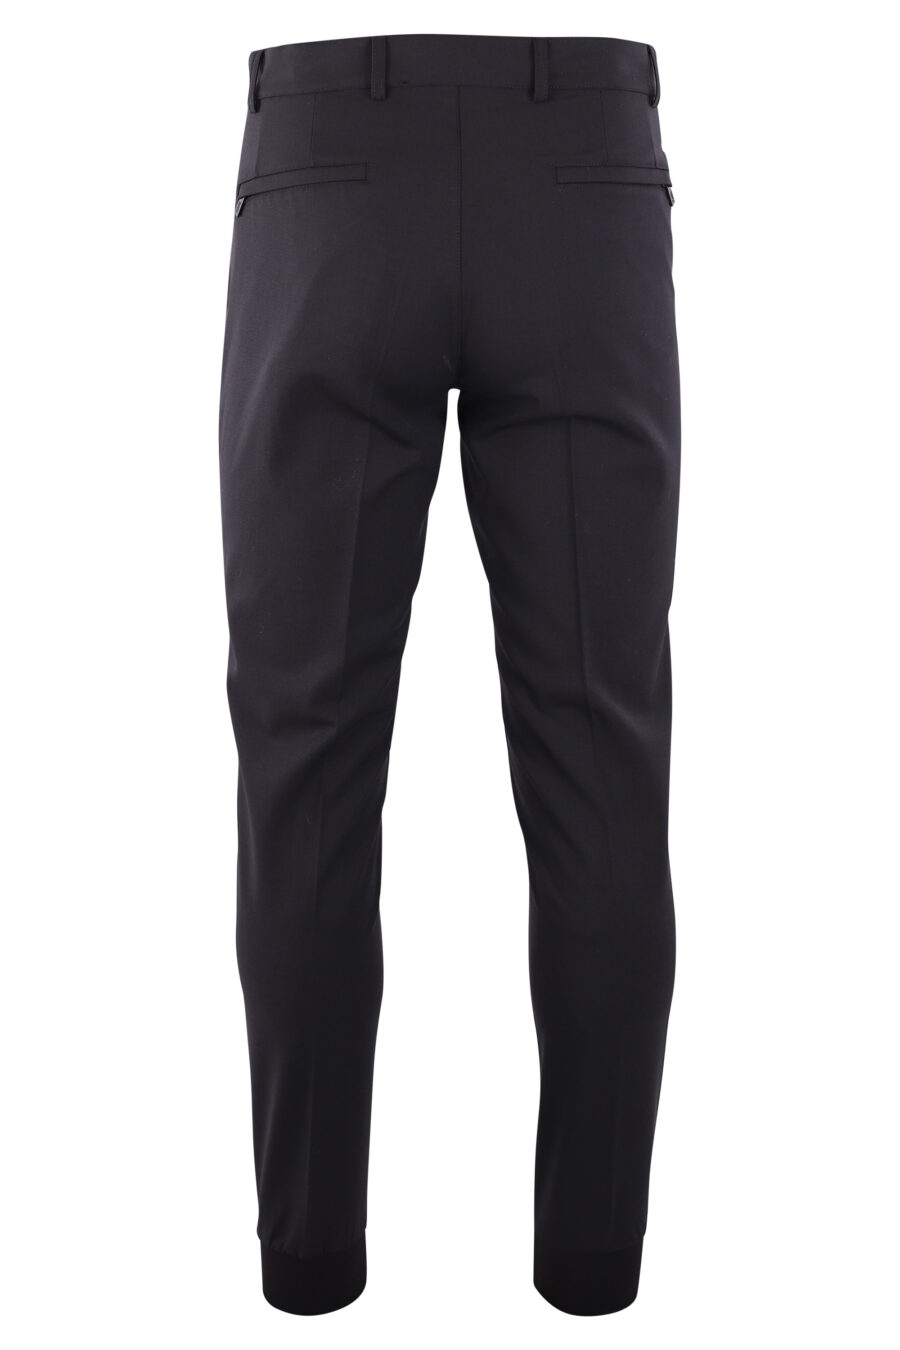 Pantalón negro con logo en cremallera - IMG 3234